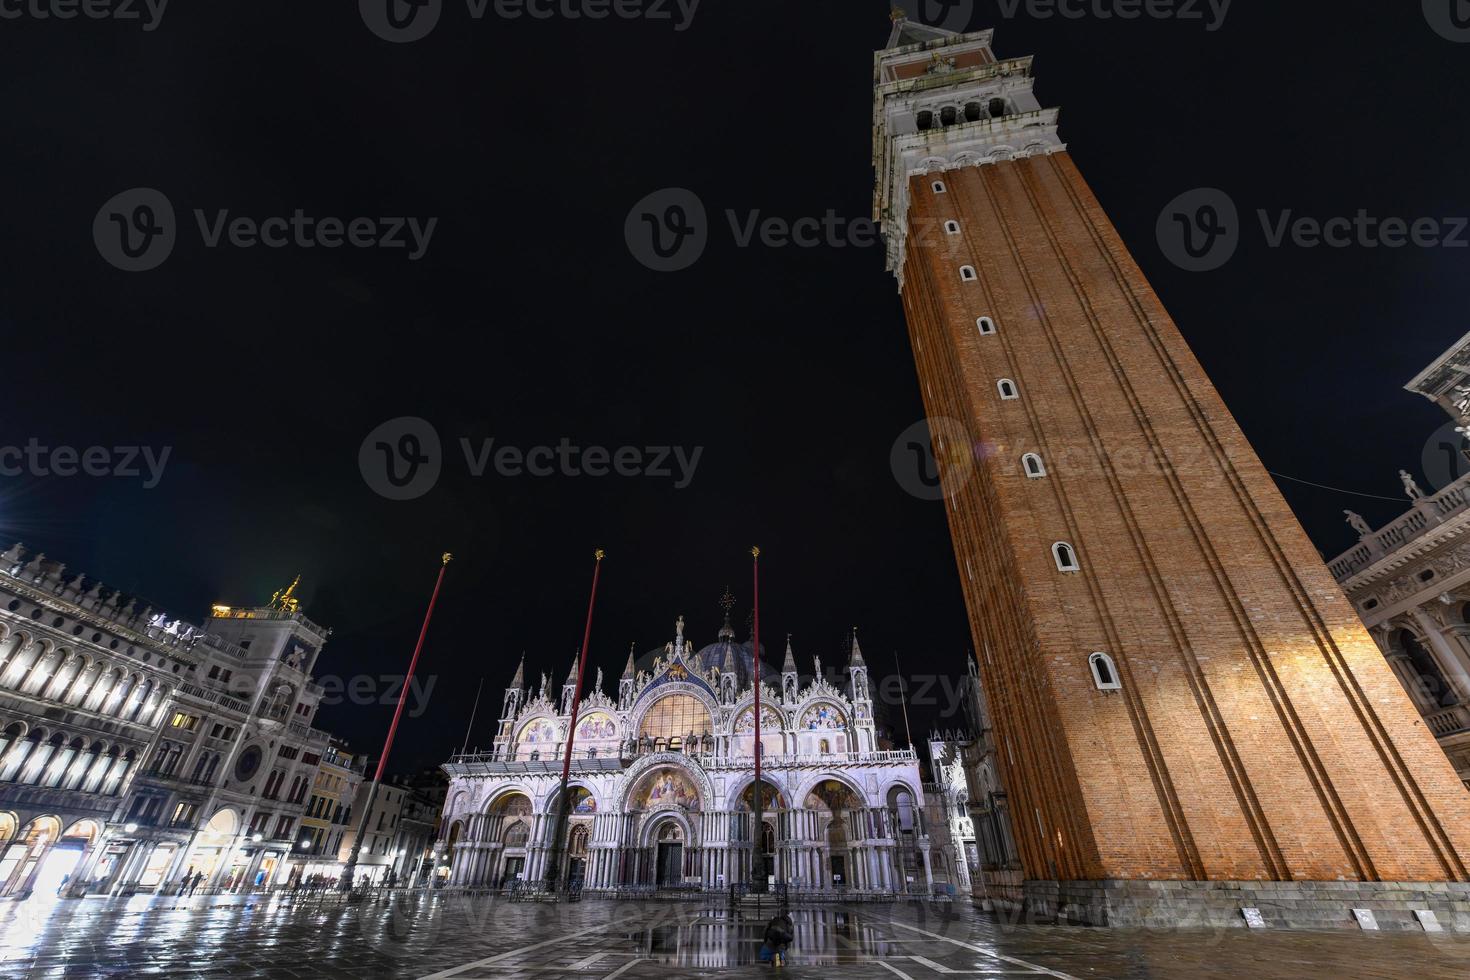 heilige mark's plein in Venetië Italië Bij nacht met reflecties in de water. foto